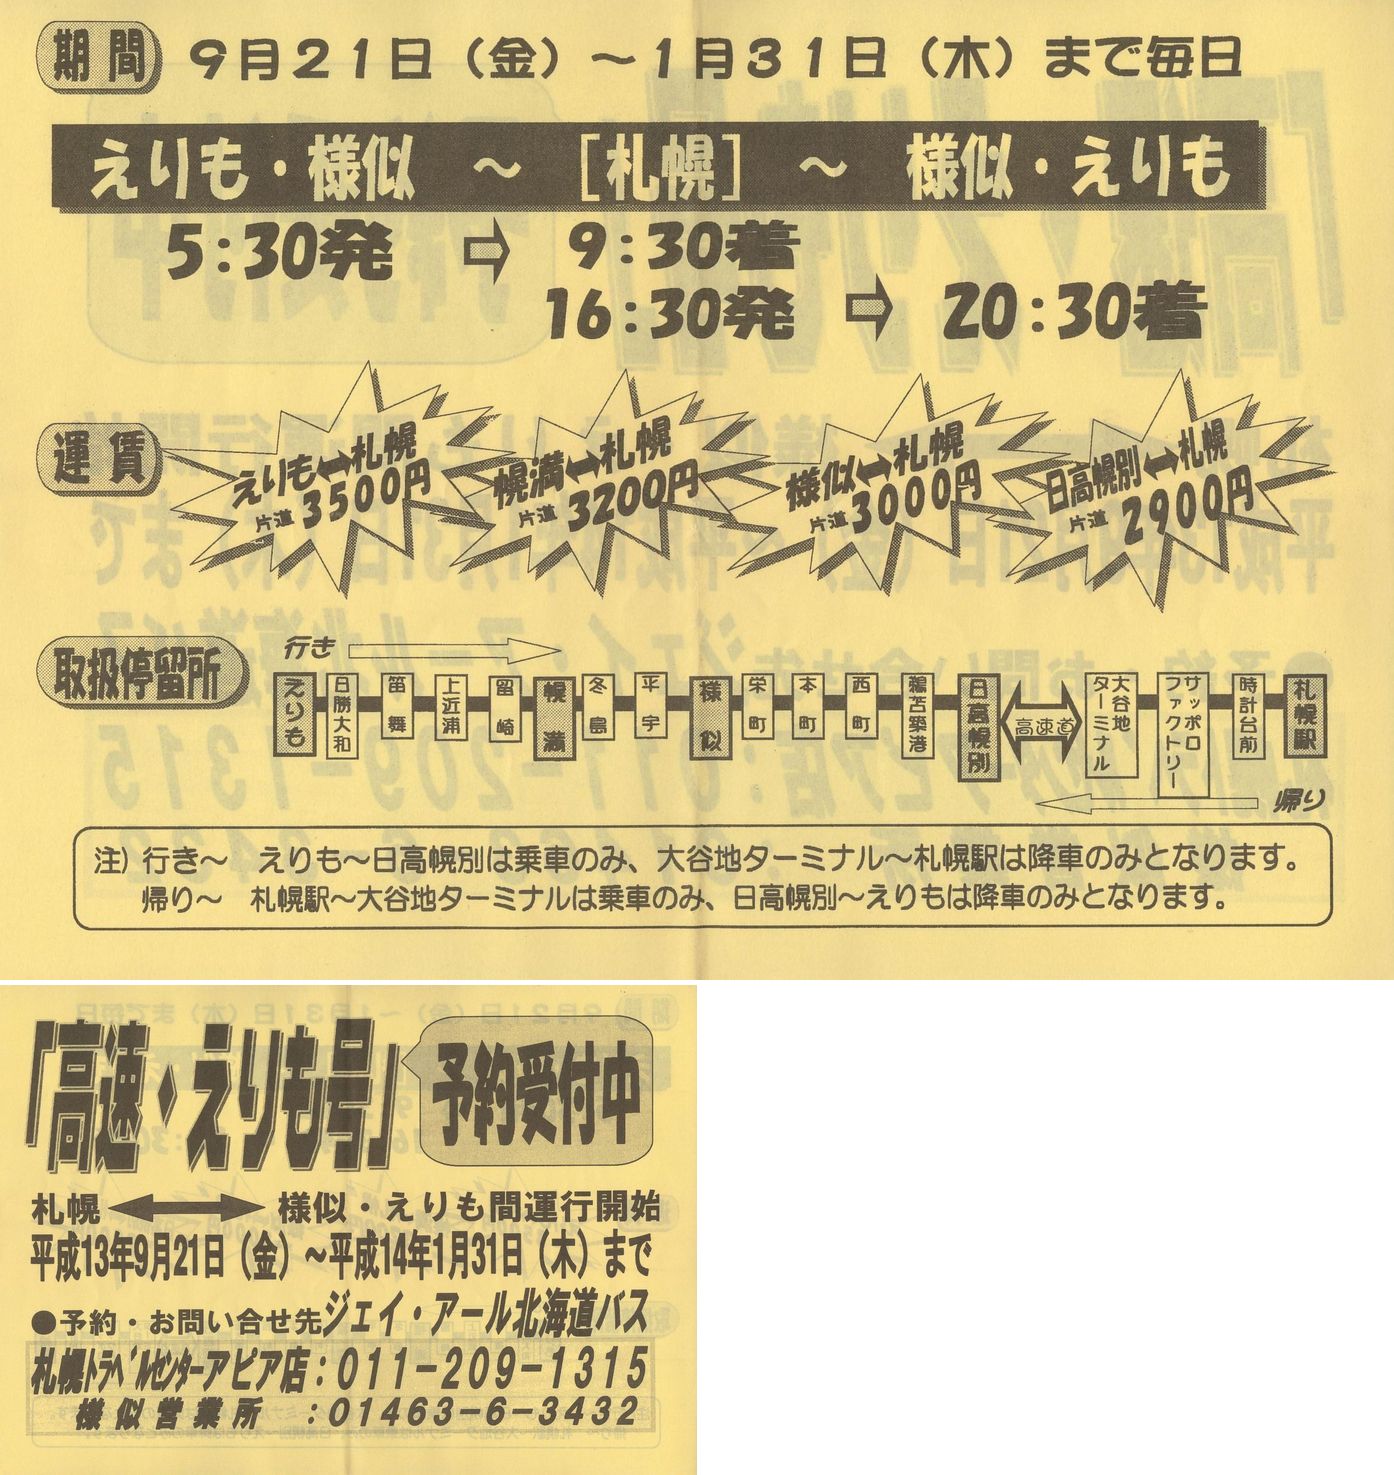 2001-09-21改正_ジェイ・アール北海道バス_高速えりも号チラシ